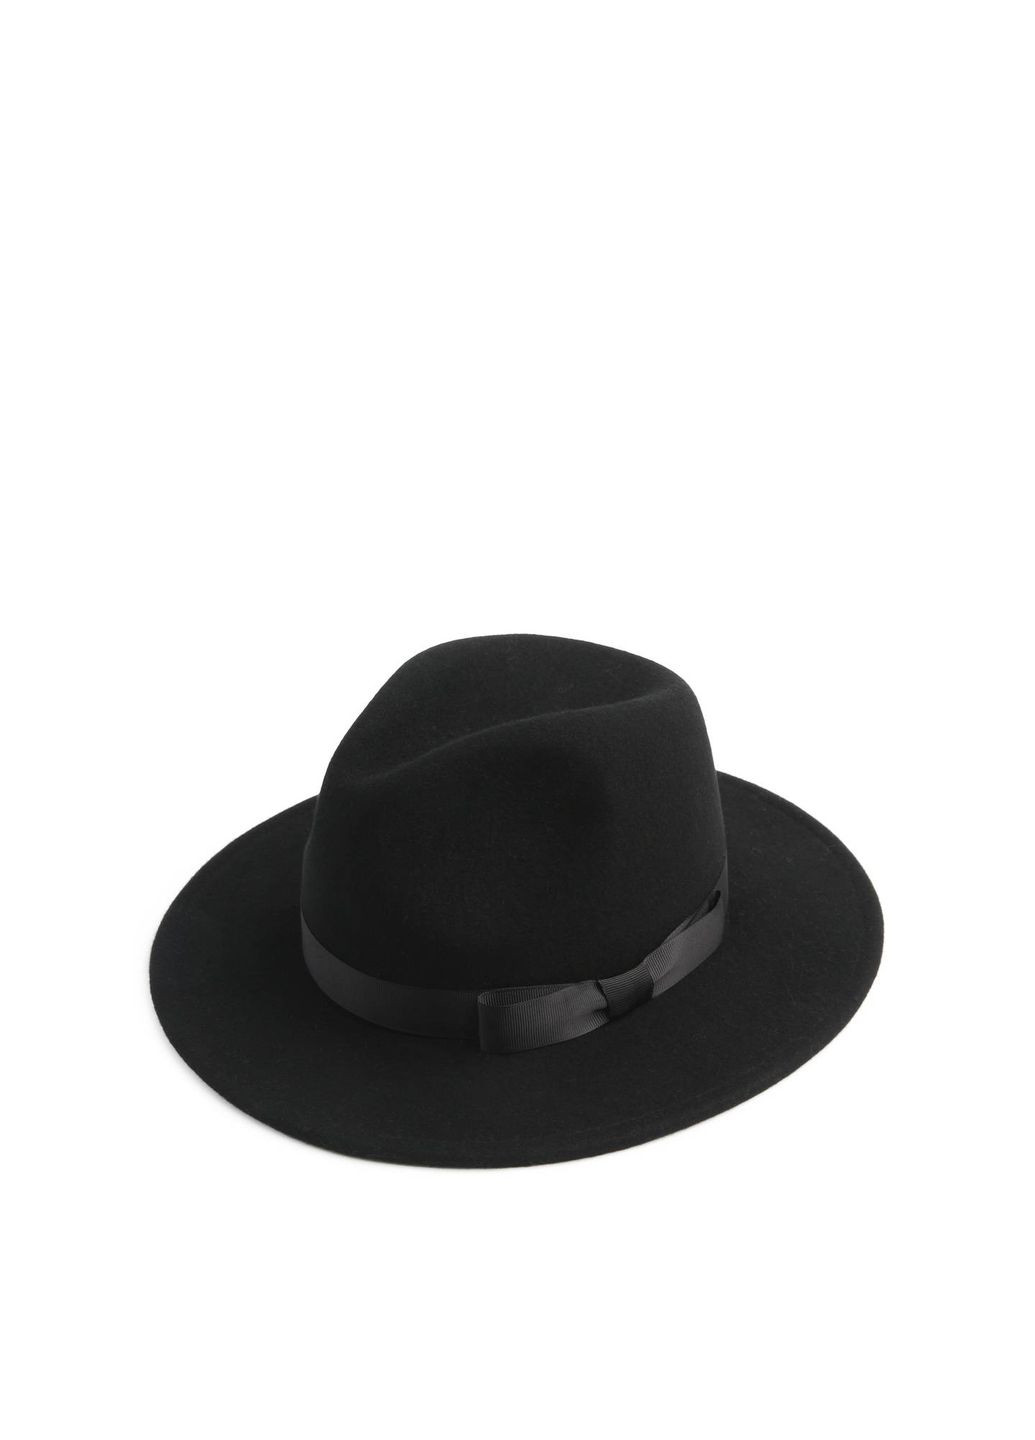 Шляпа федора женская с лентой фетр черная LuckyLOOK 659-941 (289478352)